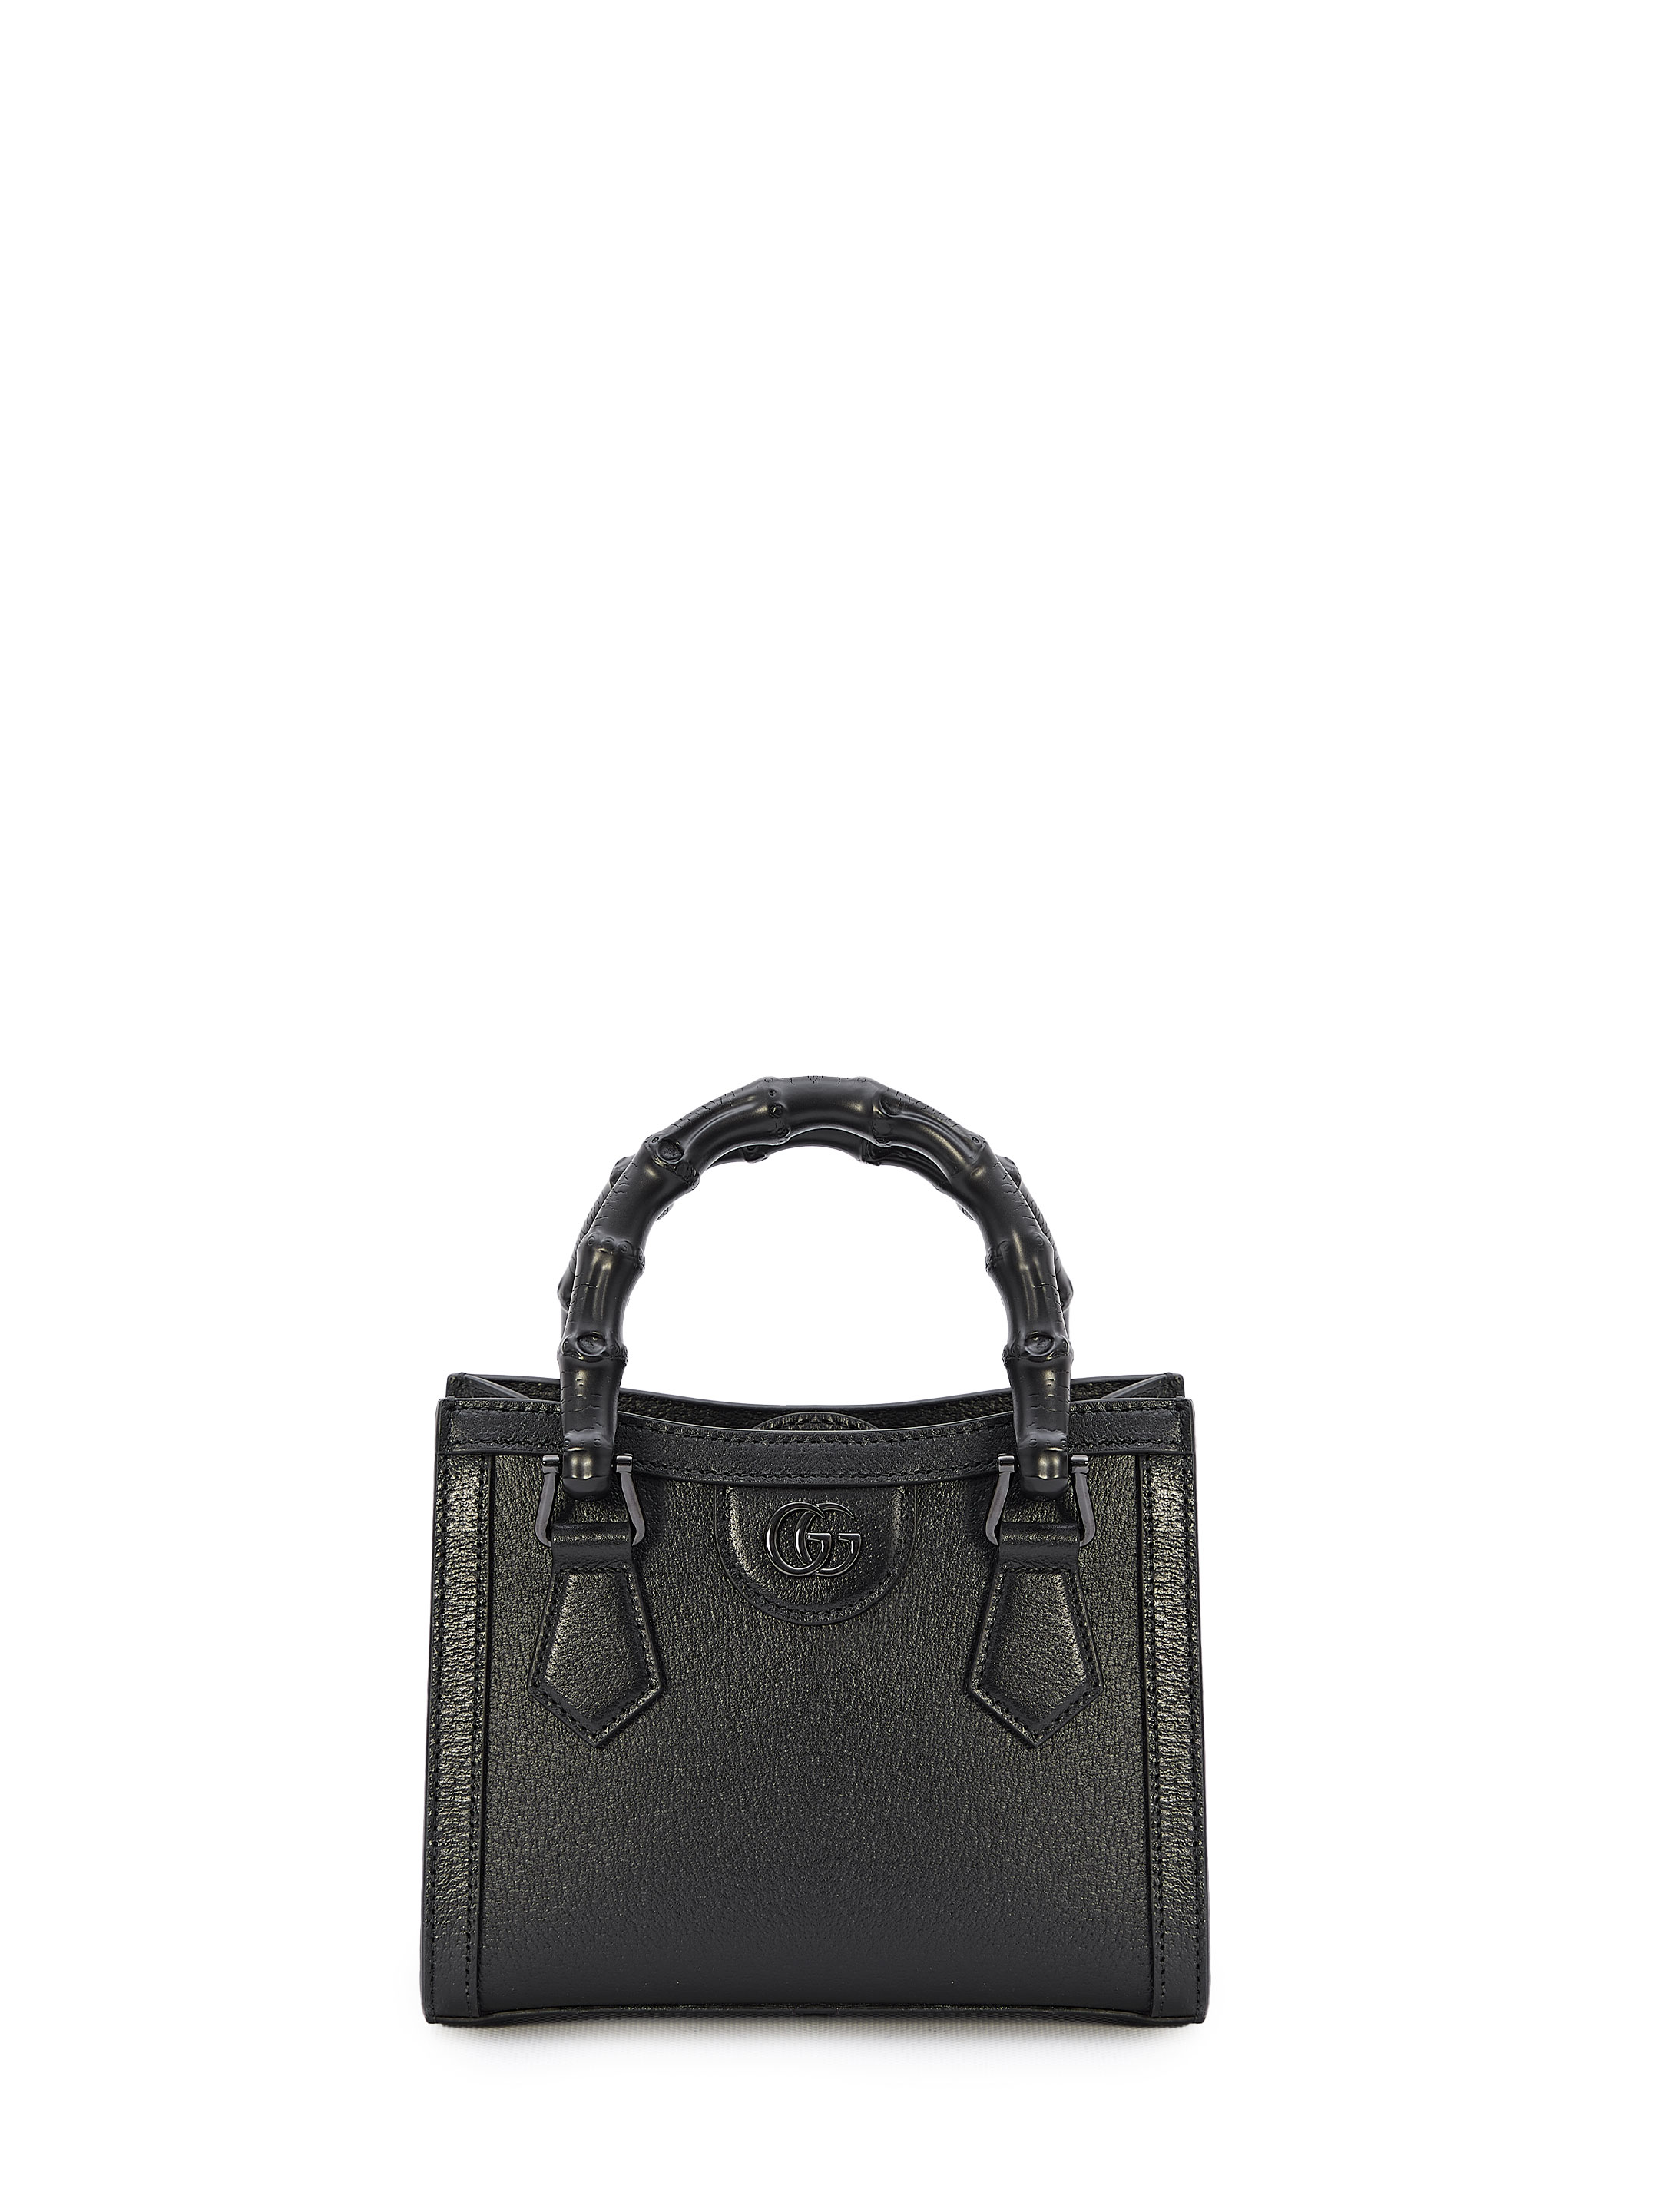 Мини сумка Gucci Diana, черный сумка папка с плечевым ремнем